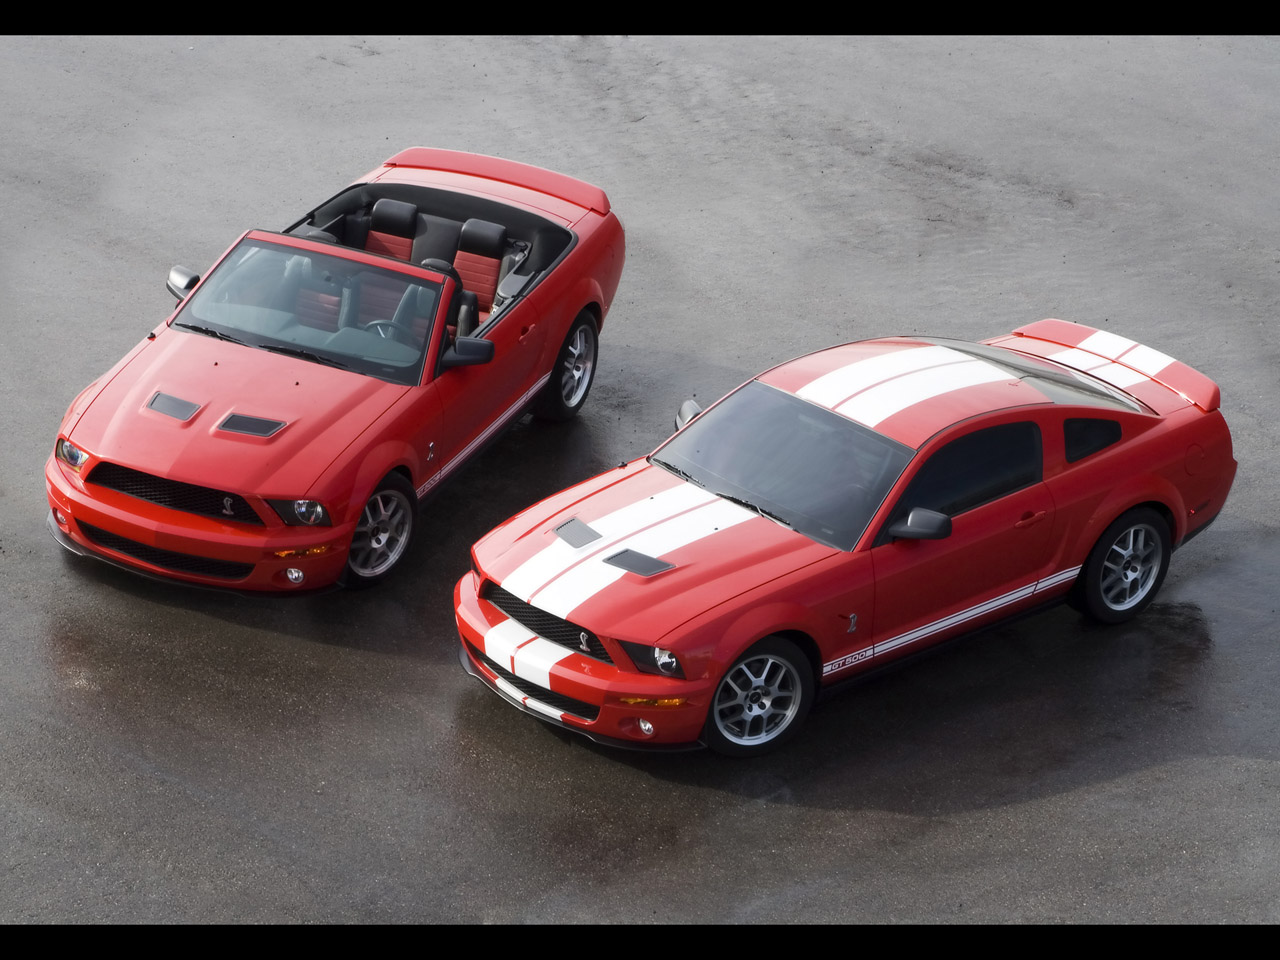 Production Ford Shelby GT500 2007 / Spécifications et photos des voitures de Muscle